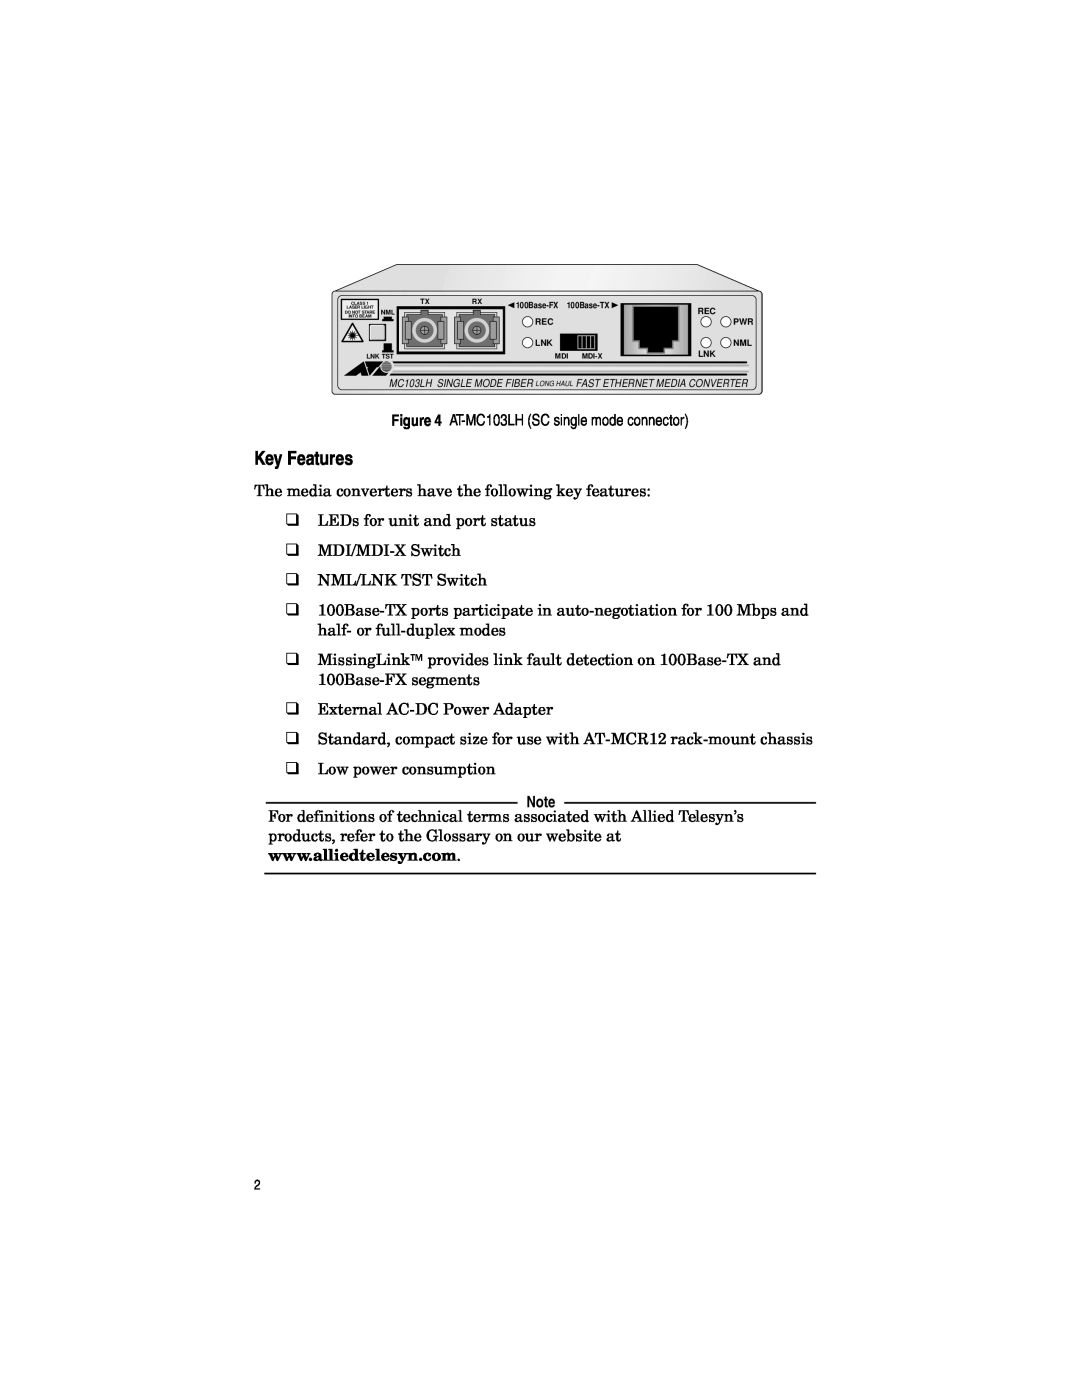 Allied Telesis AT-MC103LH, AT-MC102XL, AT-MC101XL, AT-MC103XL manual Key Features 